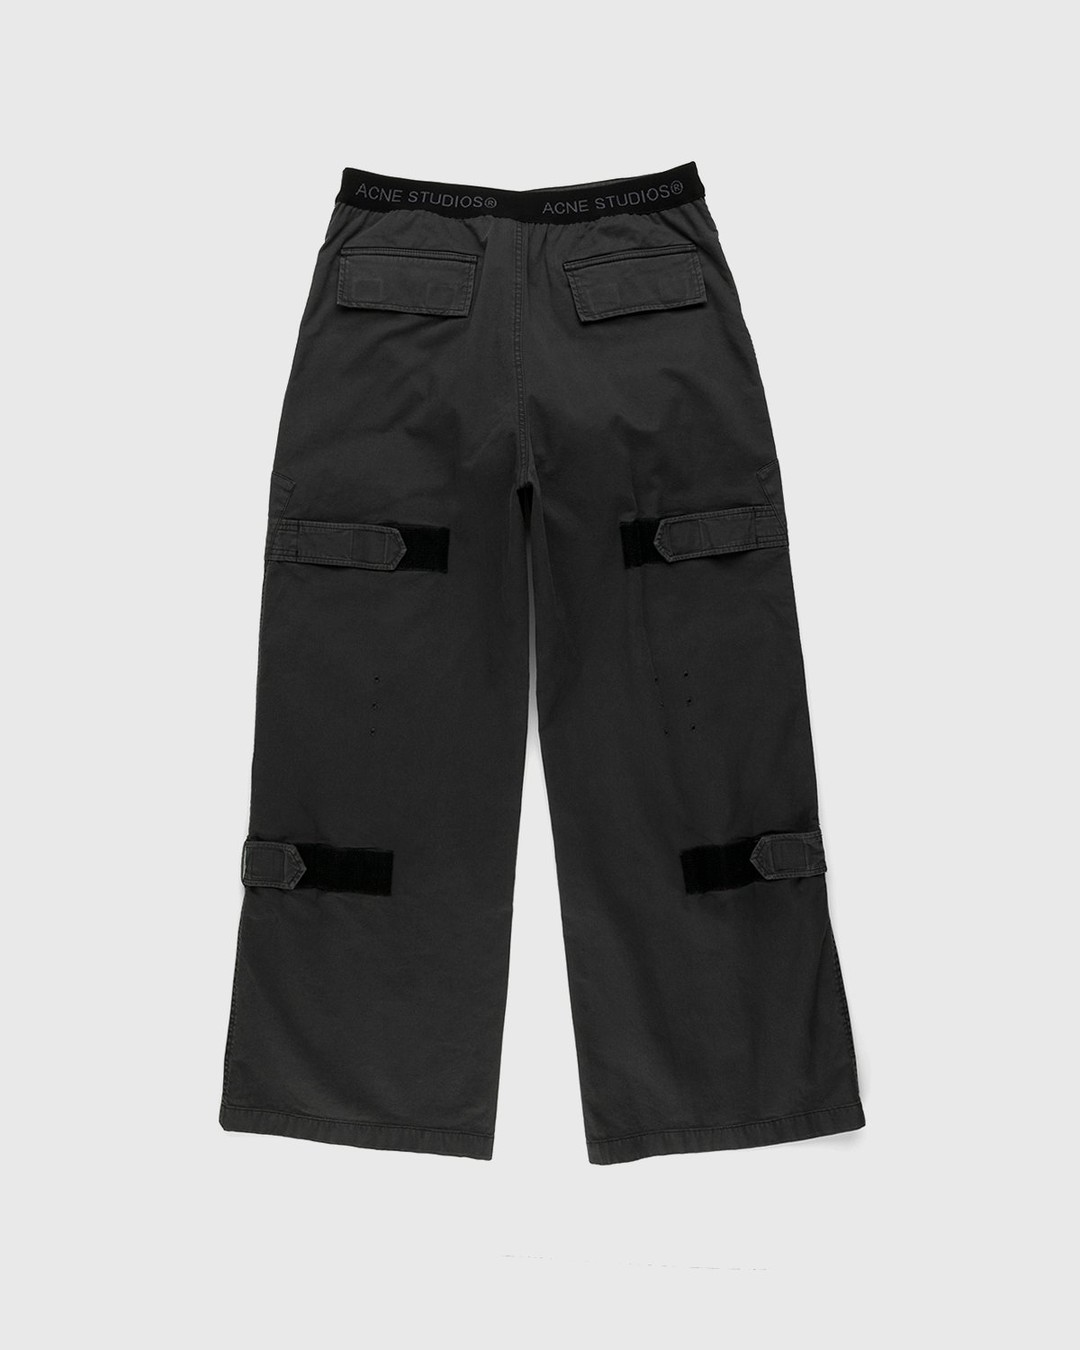 Acne Studios – Chevron Cargo Pants Anthracite Grey - Cargo Pants - Grey - Image 2